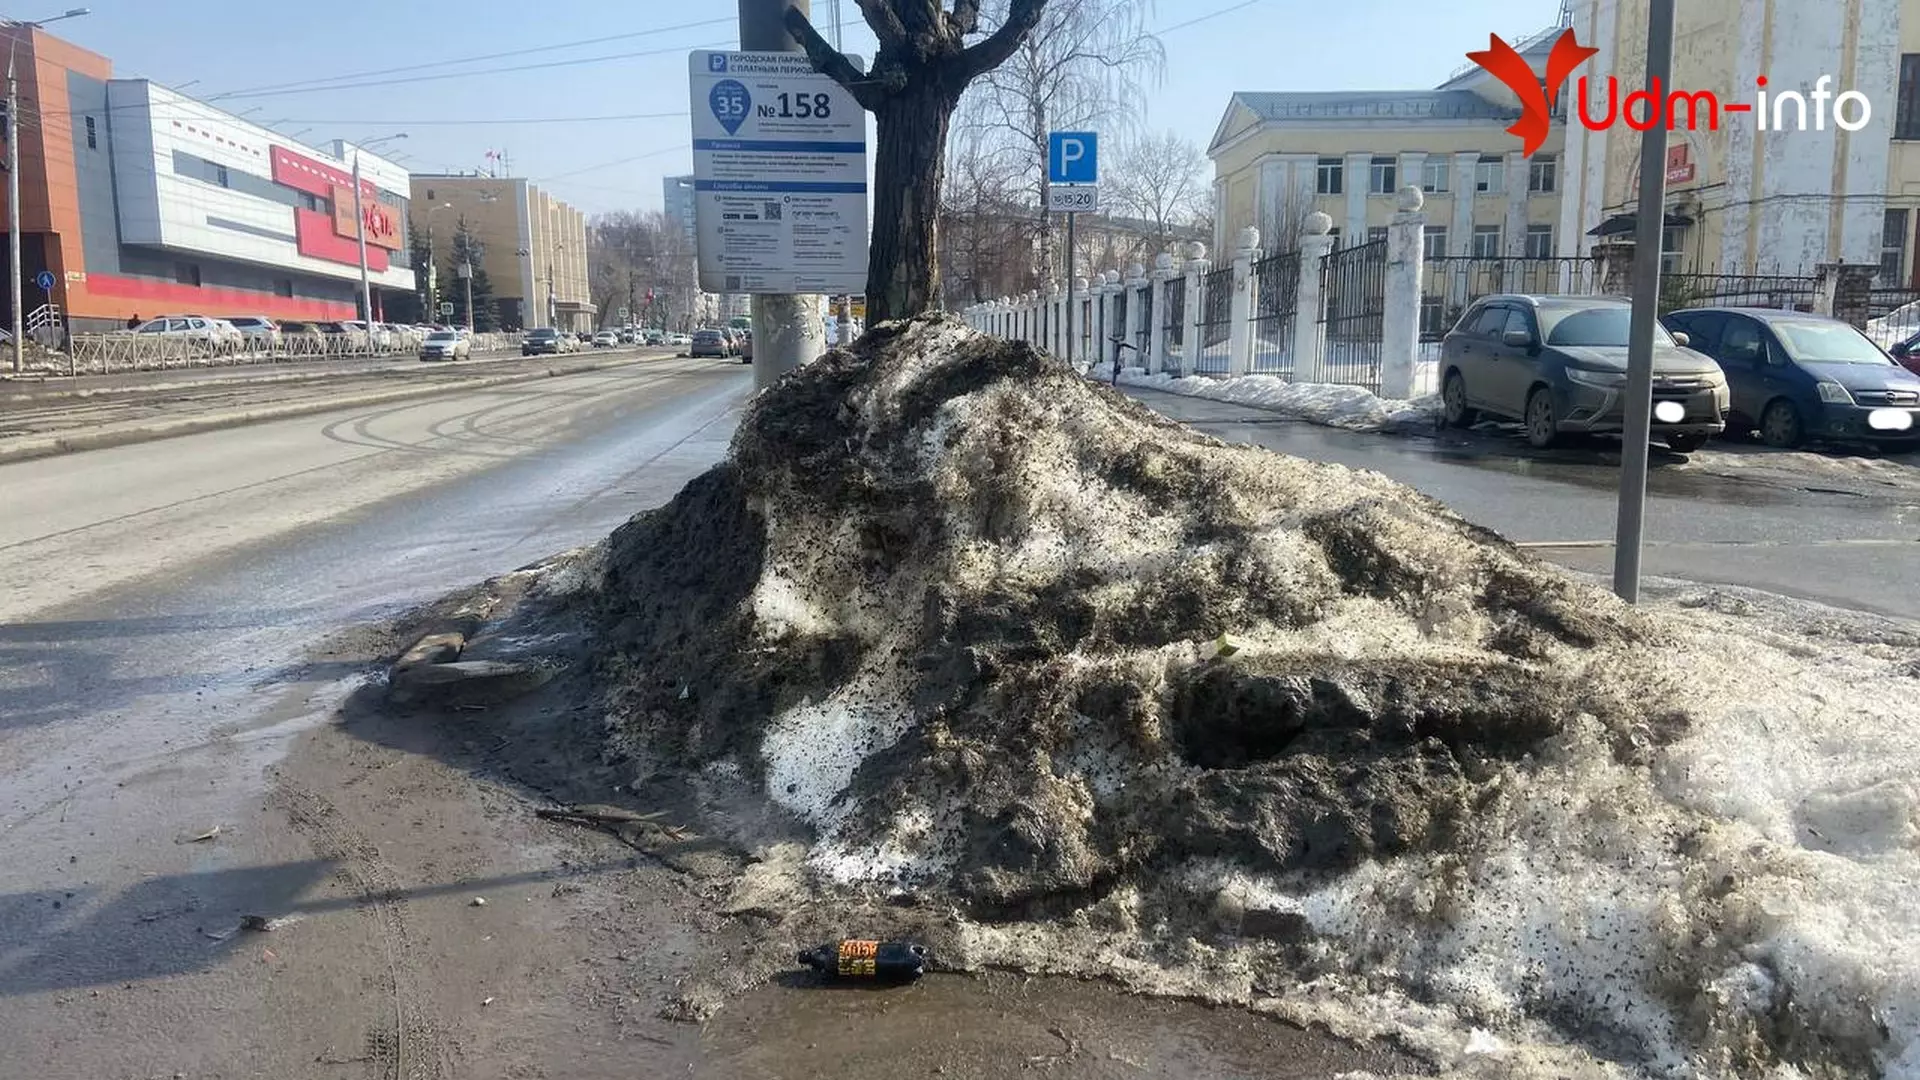 Грязь, лужи и мусор: как выглядят платные парковки Ижевска после зимы